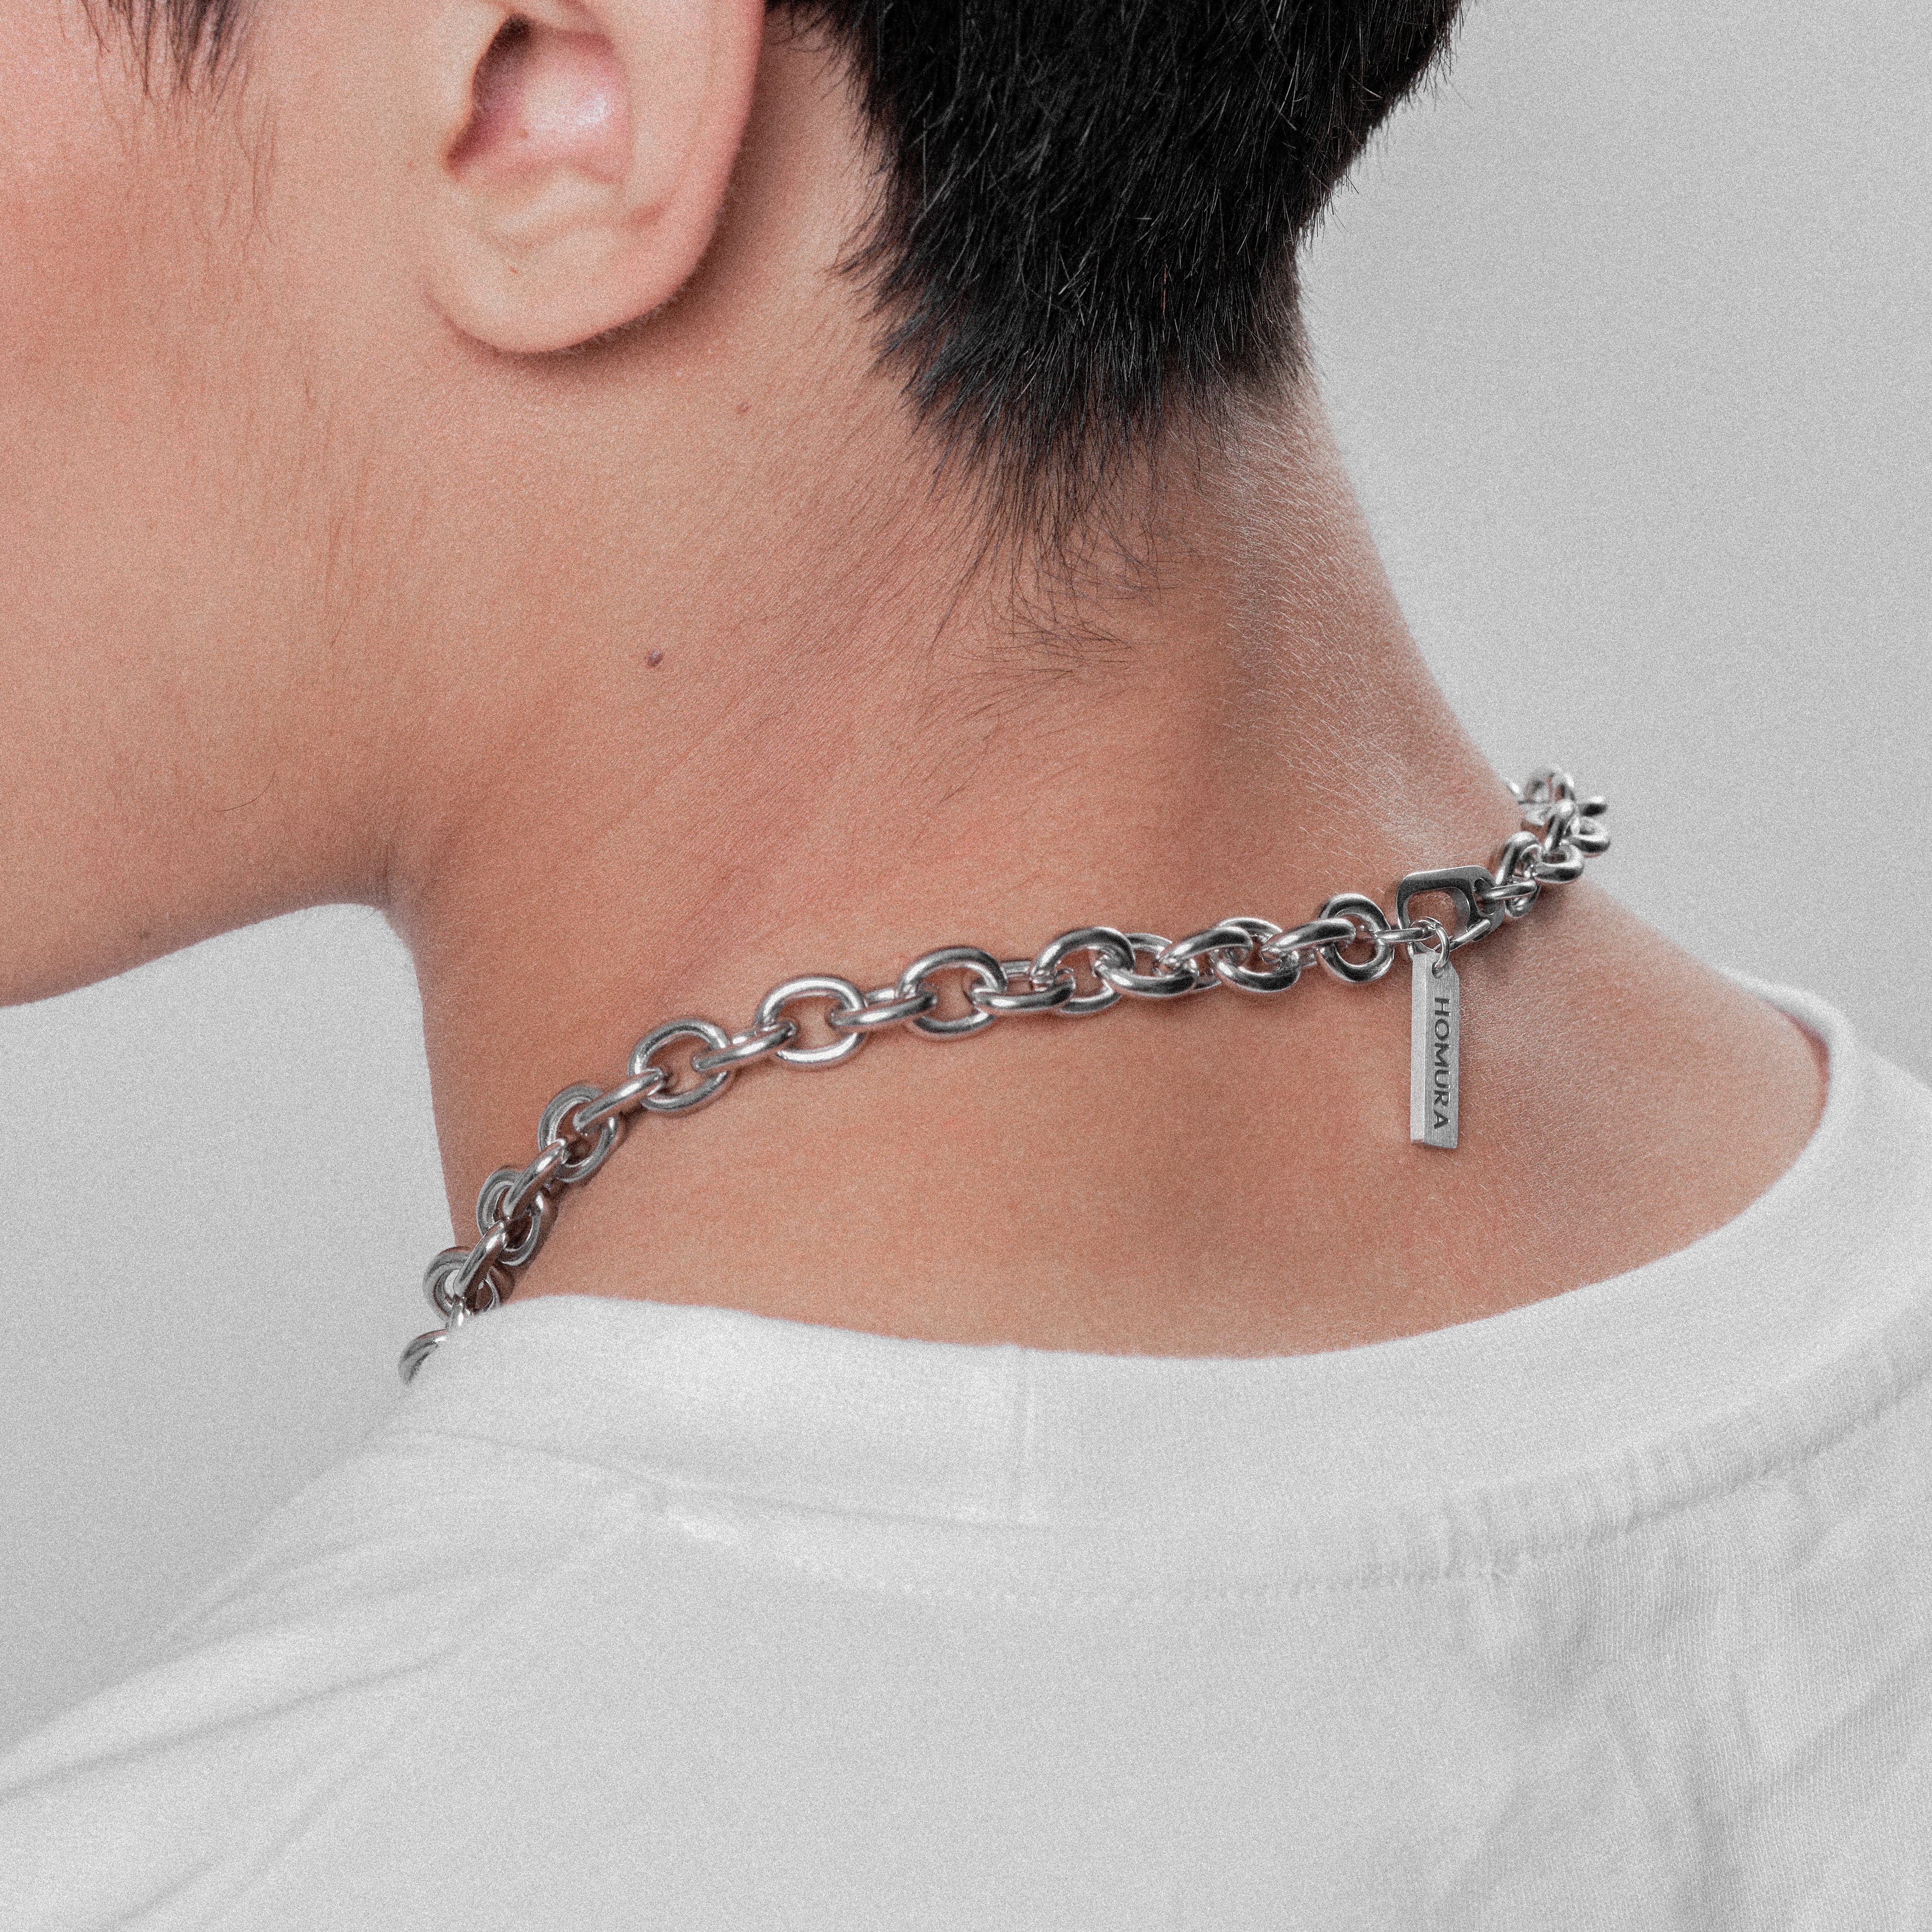 Hound® Chain Collar